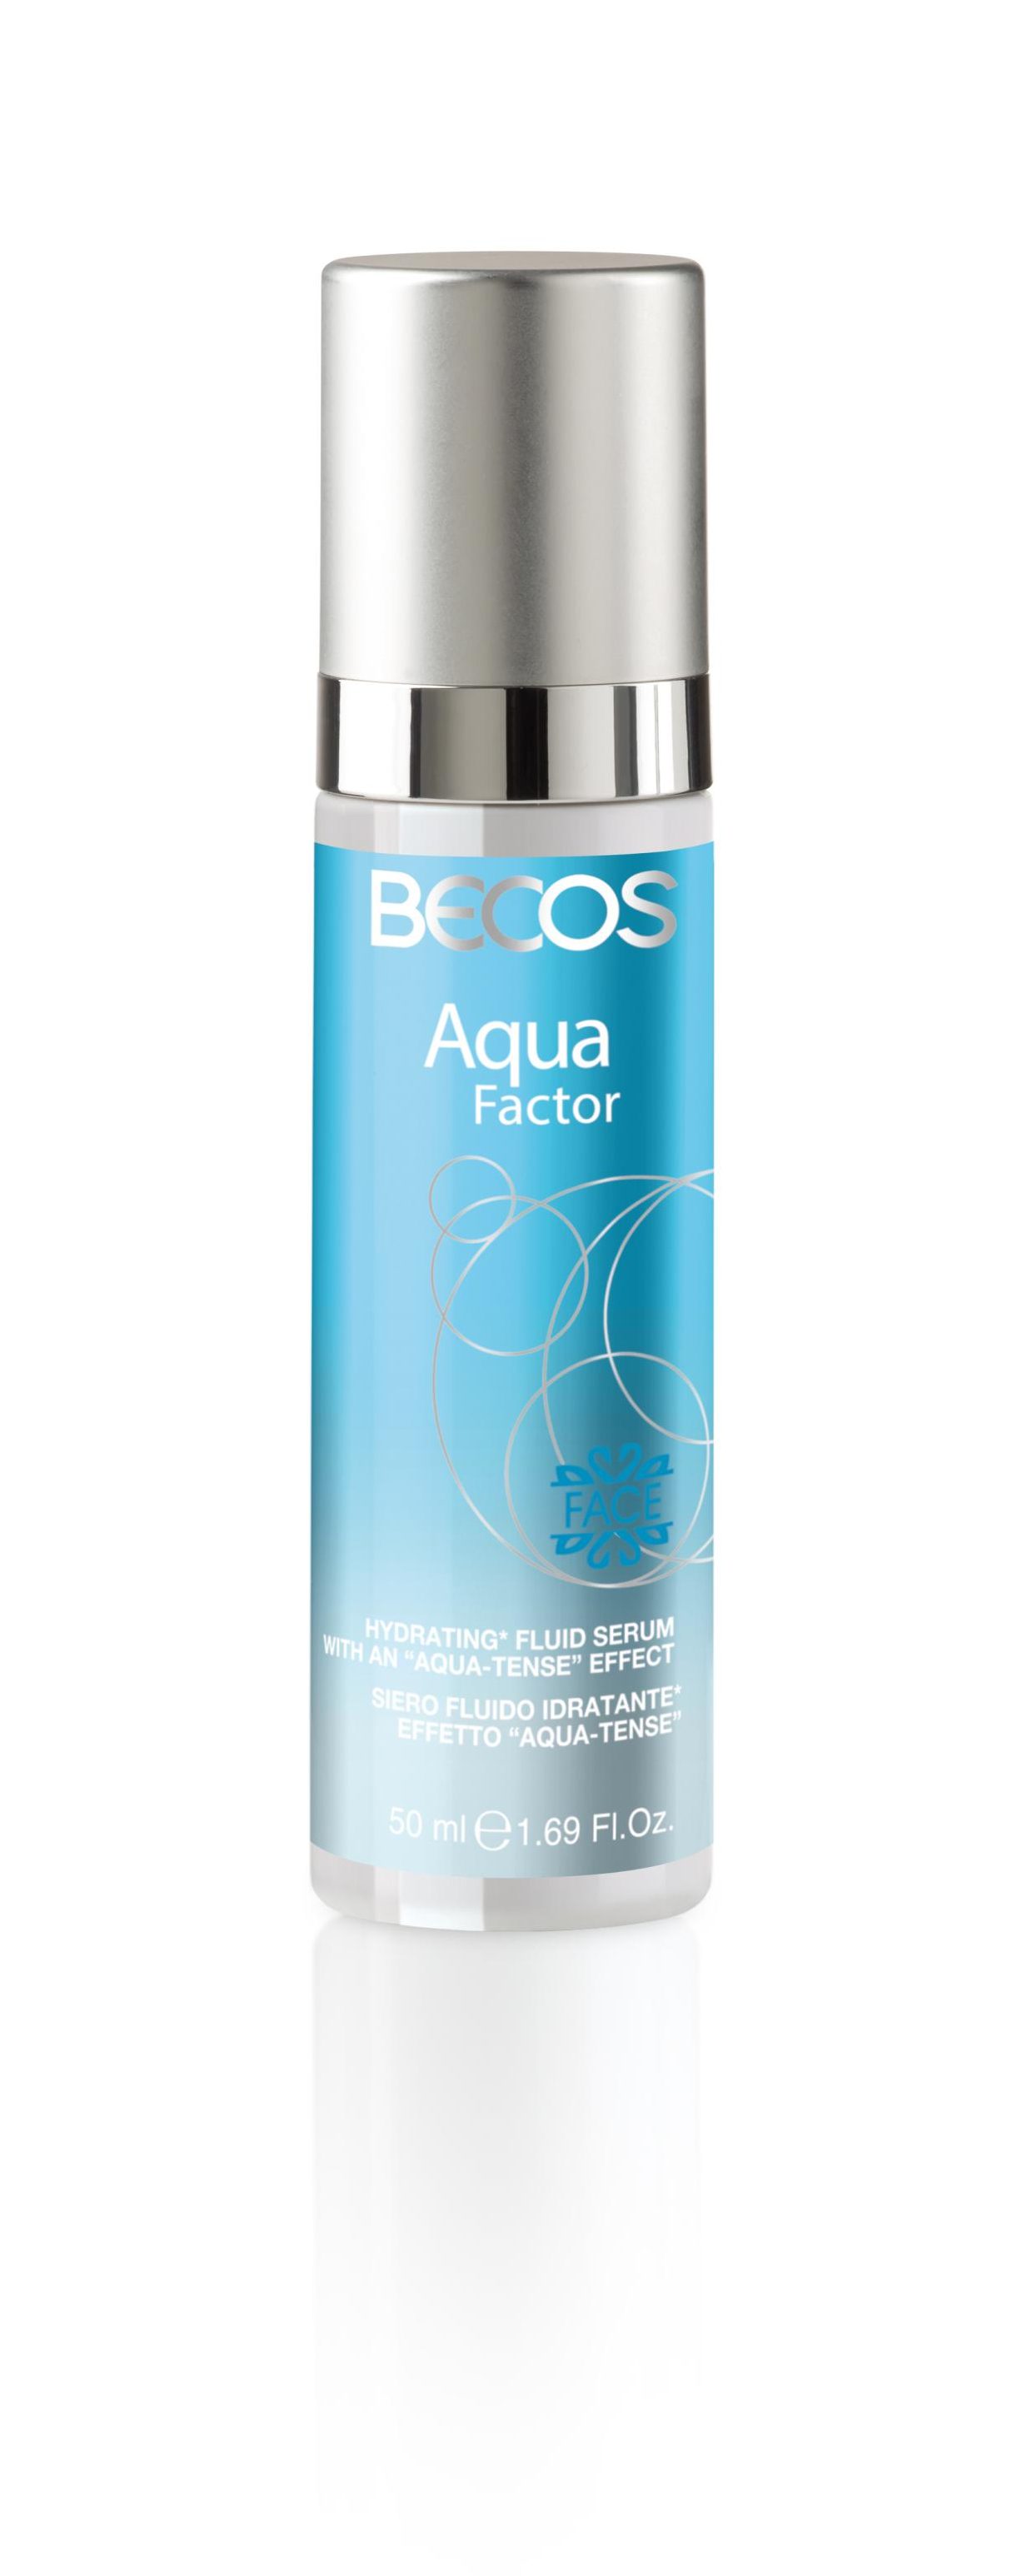 Il siero idratante effetto aqua tense della linea Aqua Factor by Bacos